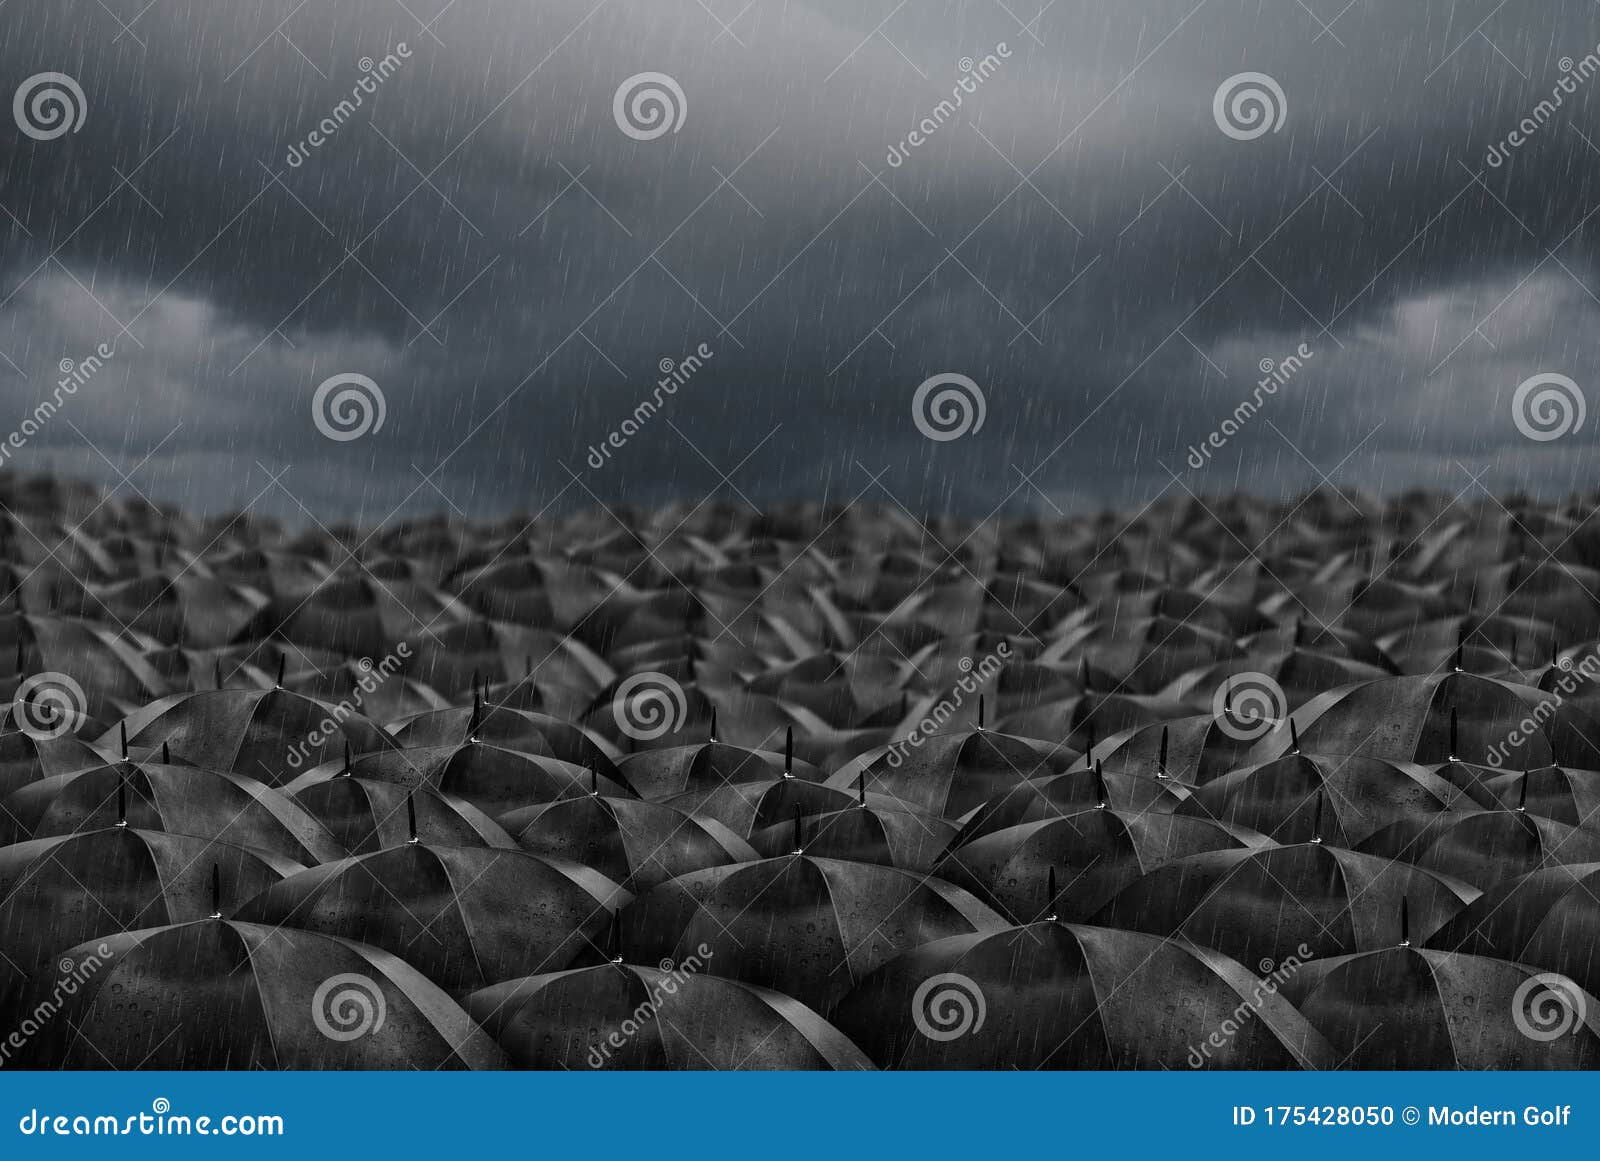 black umbrellas in the rain background